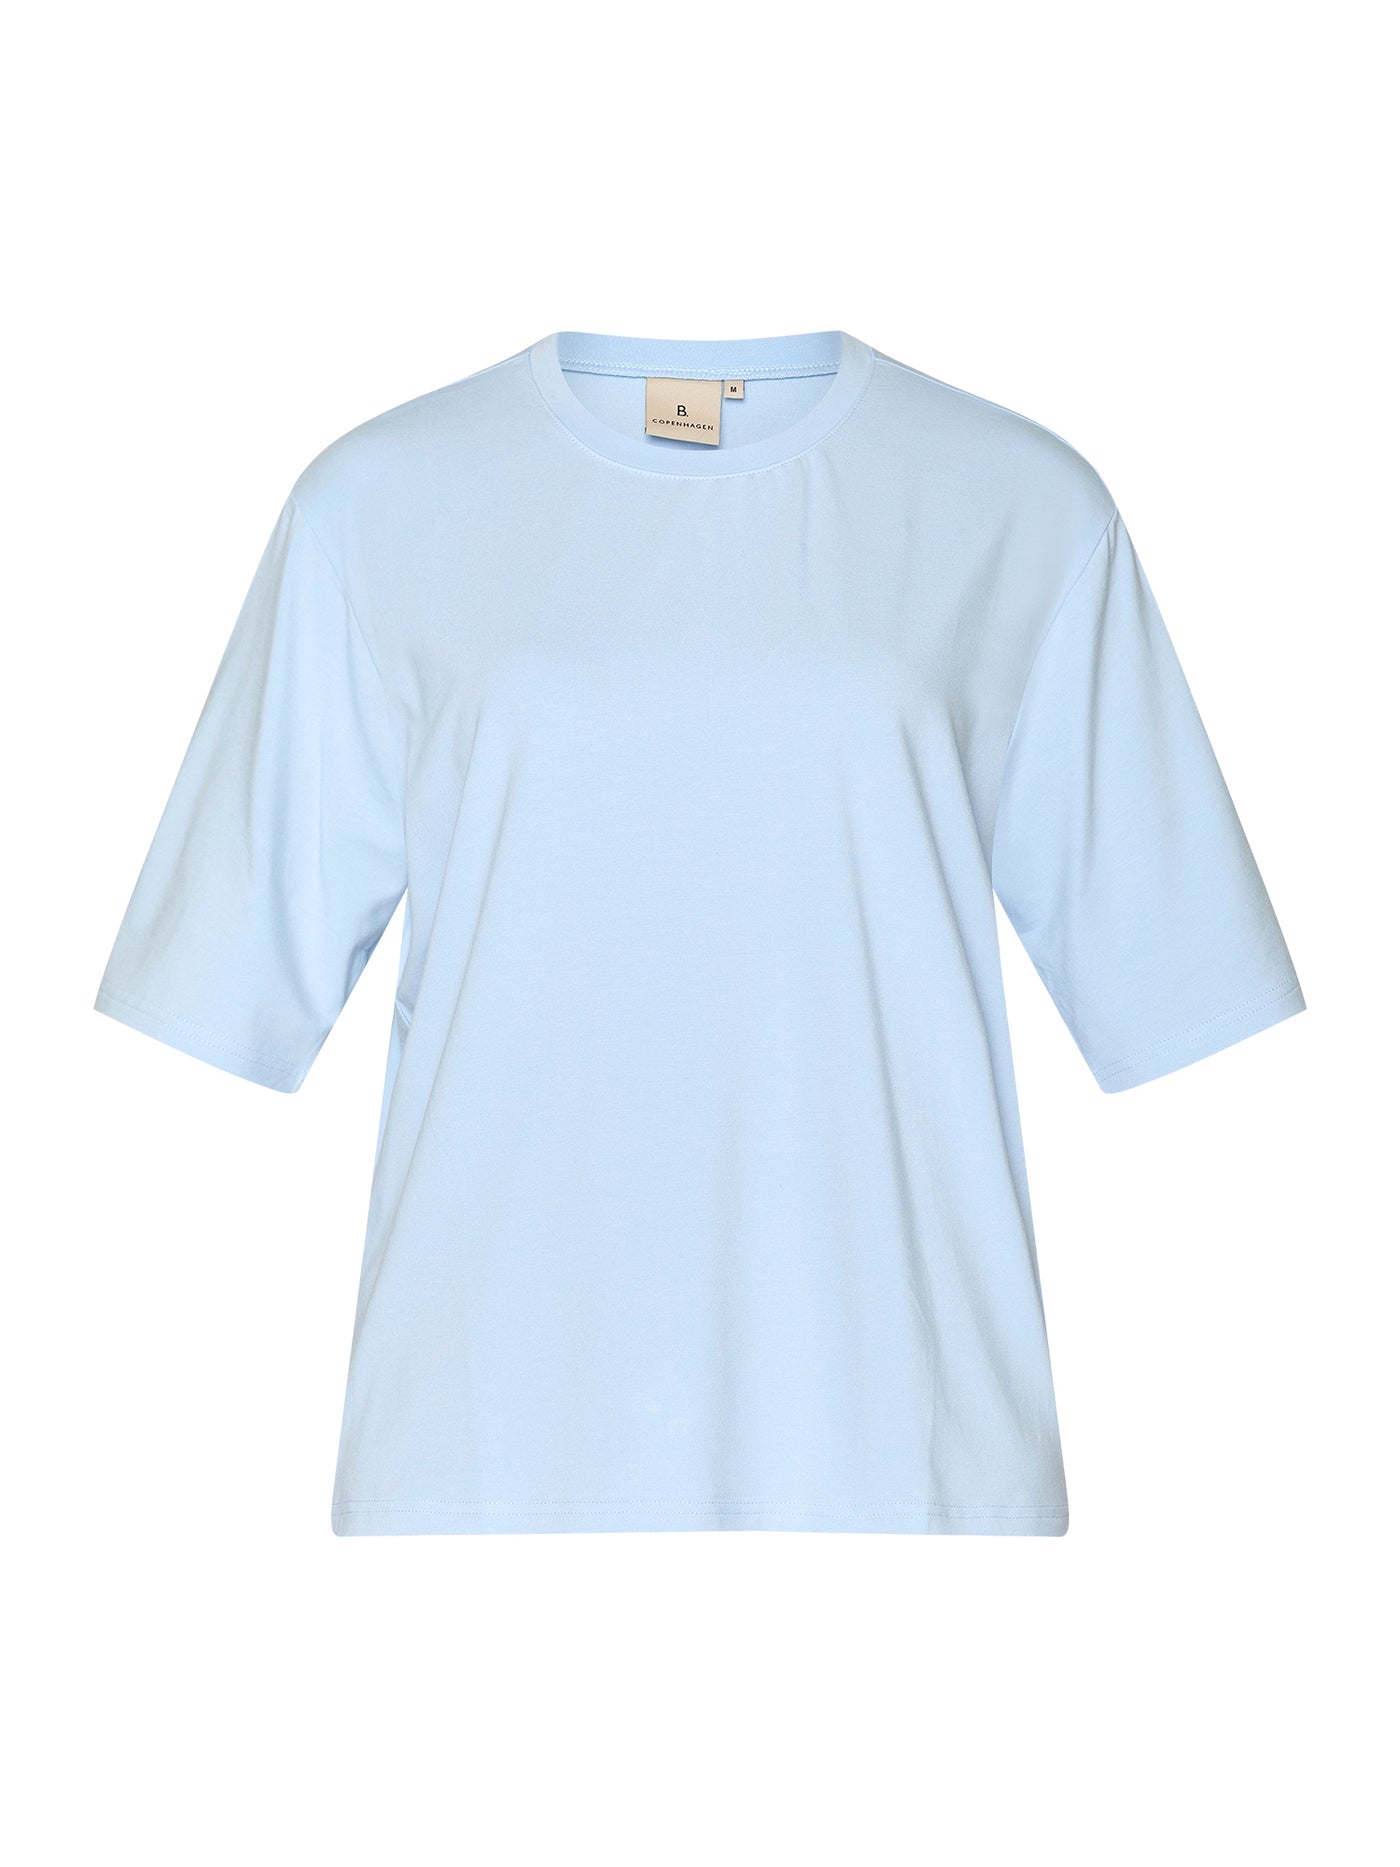 T-shirt - Chambray Blue